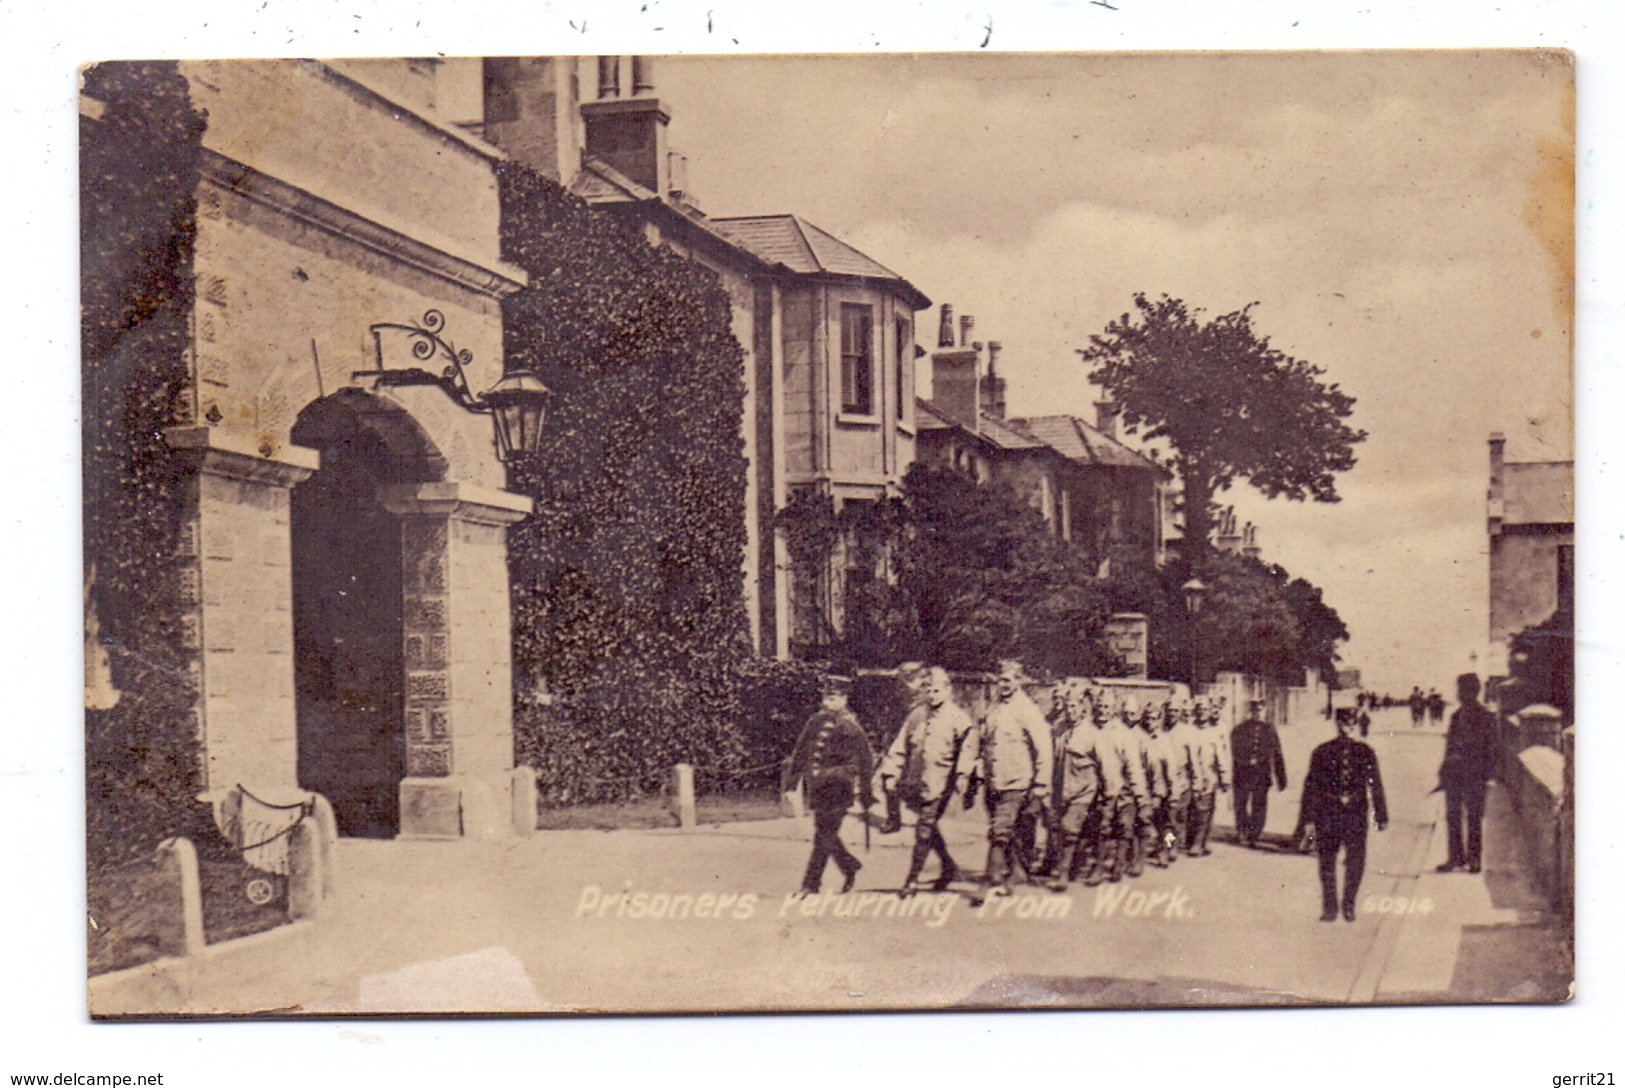 JUSTIZ / GEFANGENE, Prisoners Returning From Work, 1913, England - Gefängnis & Insassen